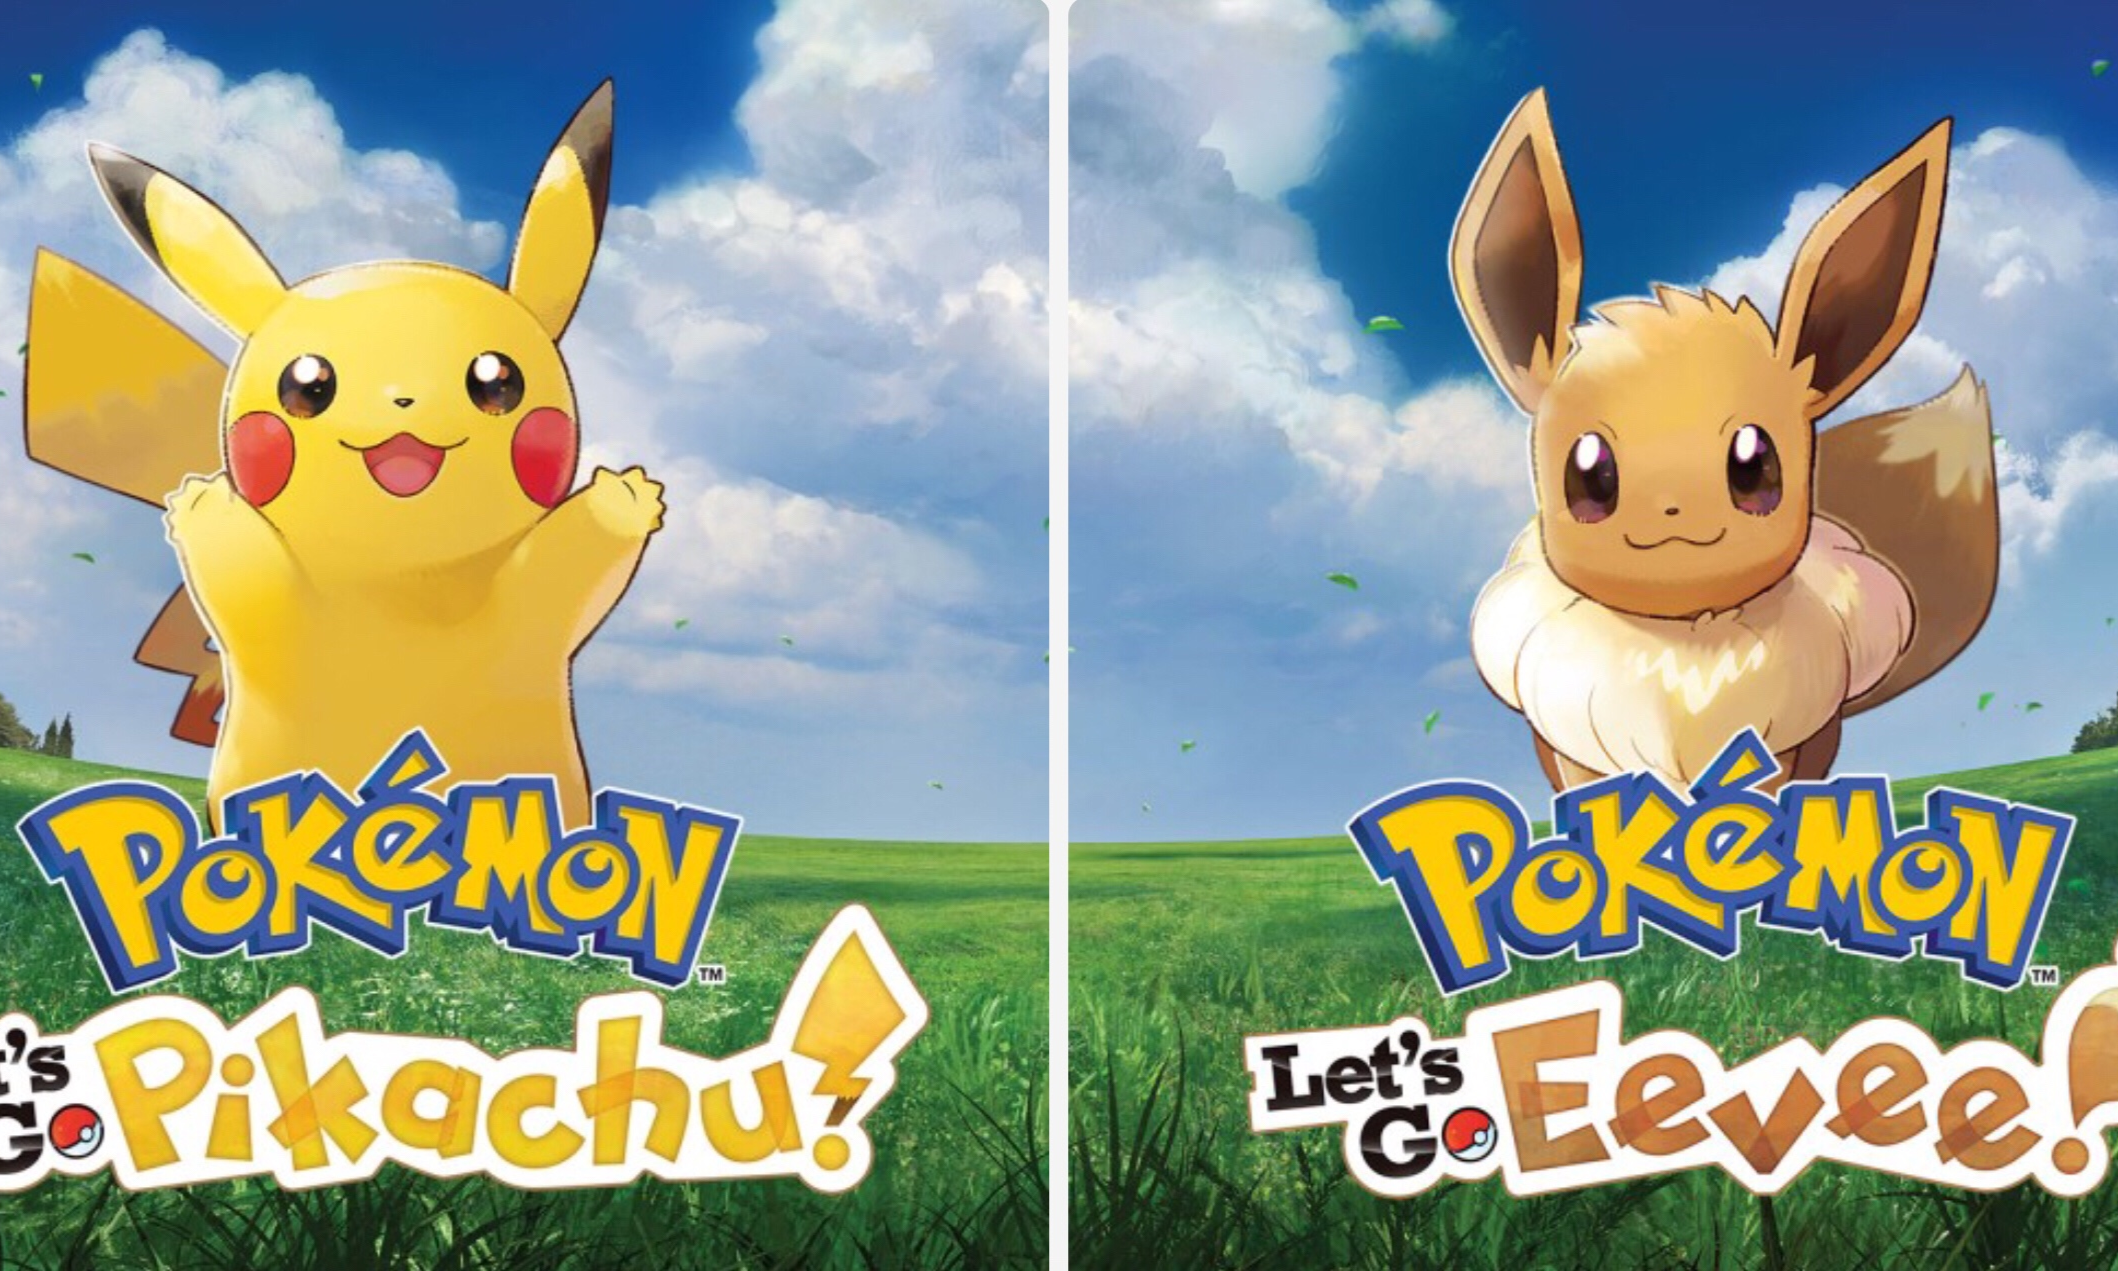 Nintendo Switch / Test: Pokémon Let's Go Pikachu / Evoli: A